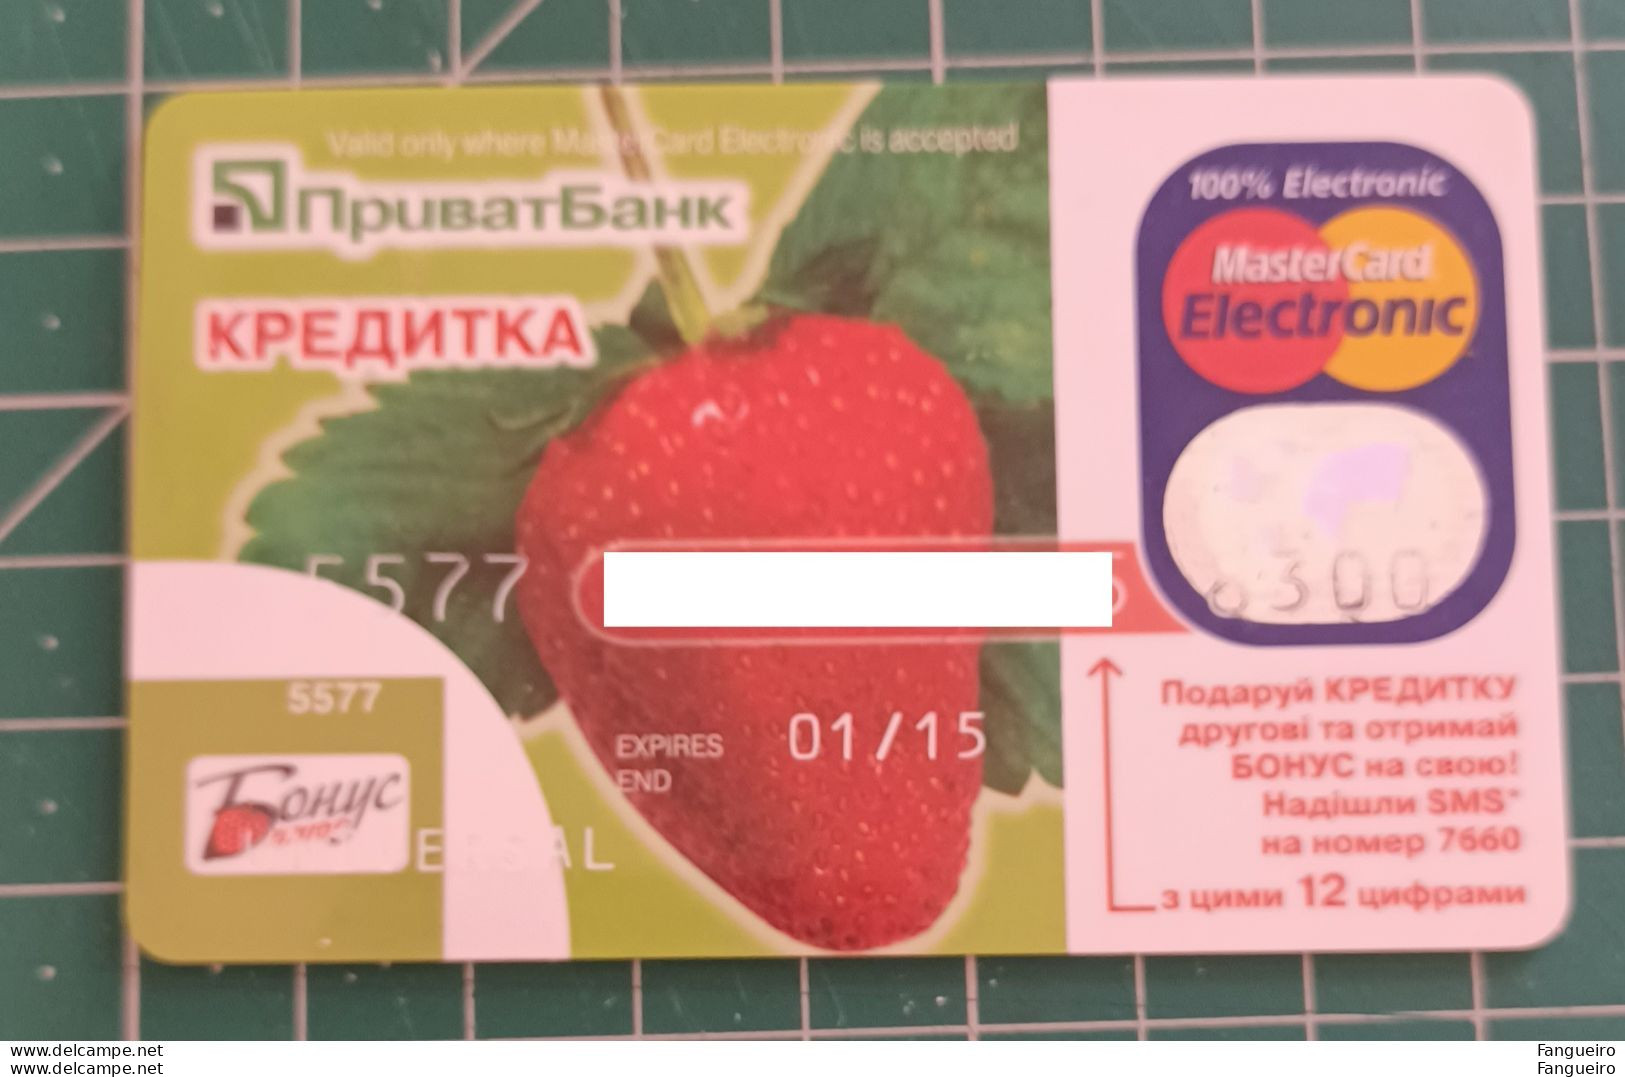 UKRAINE CREDIT CARD PRIVAT BANK - Cartes De Crédit (expiration Min. 10 Ans)